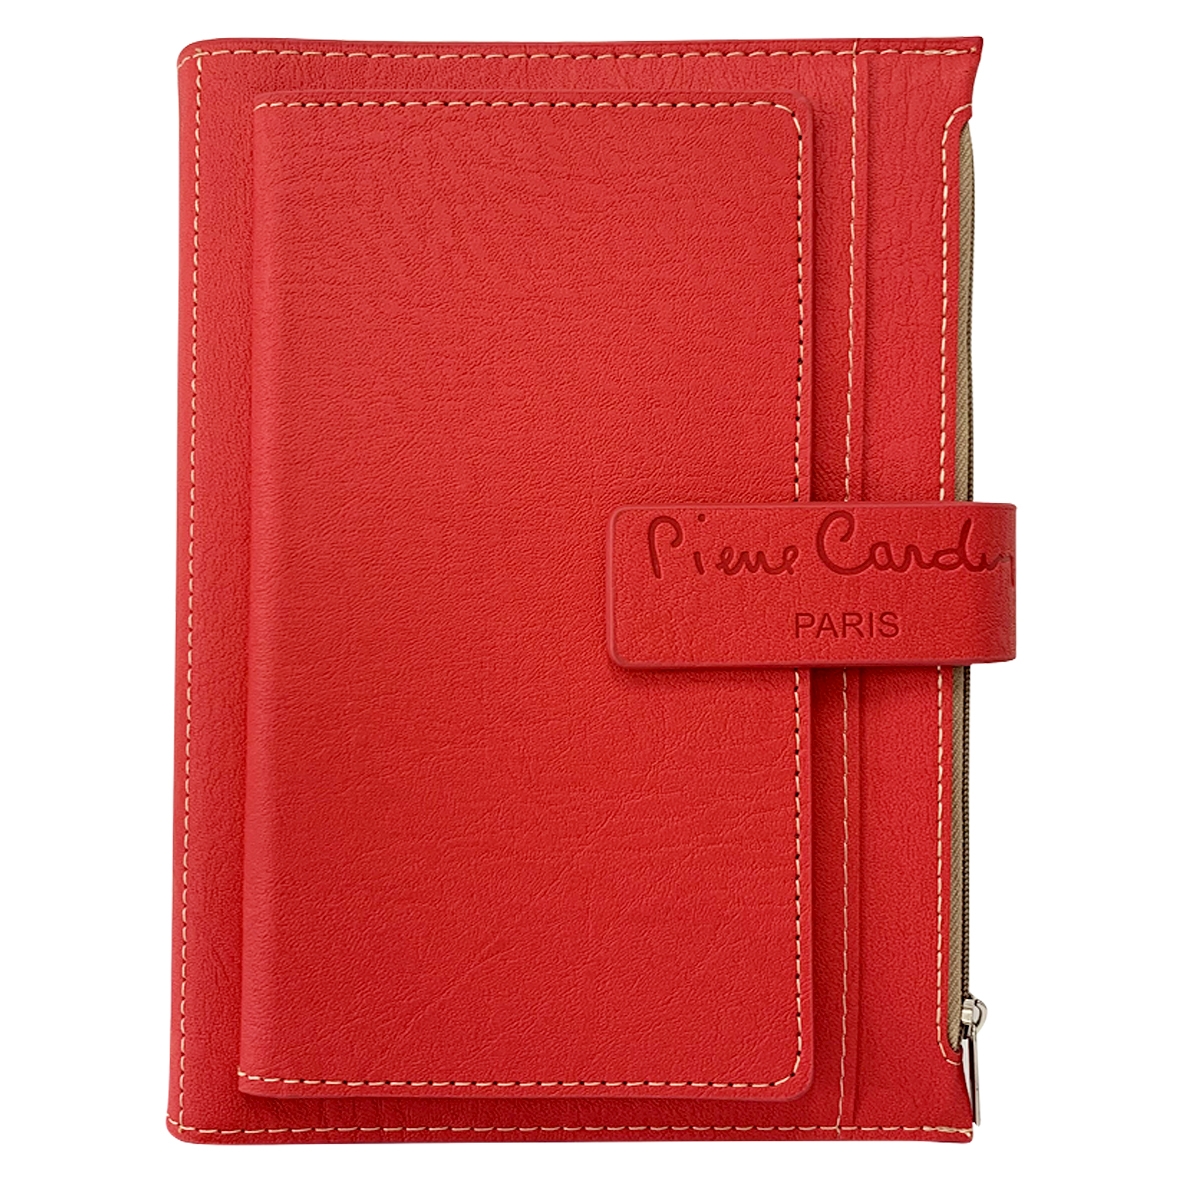 Записная книжка Pierre Cardin в обложке, красная, 21,5 х 15,5, 3,5 см, красный